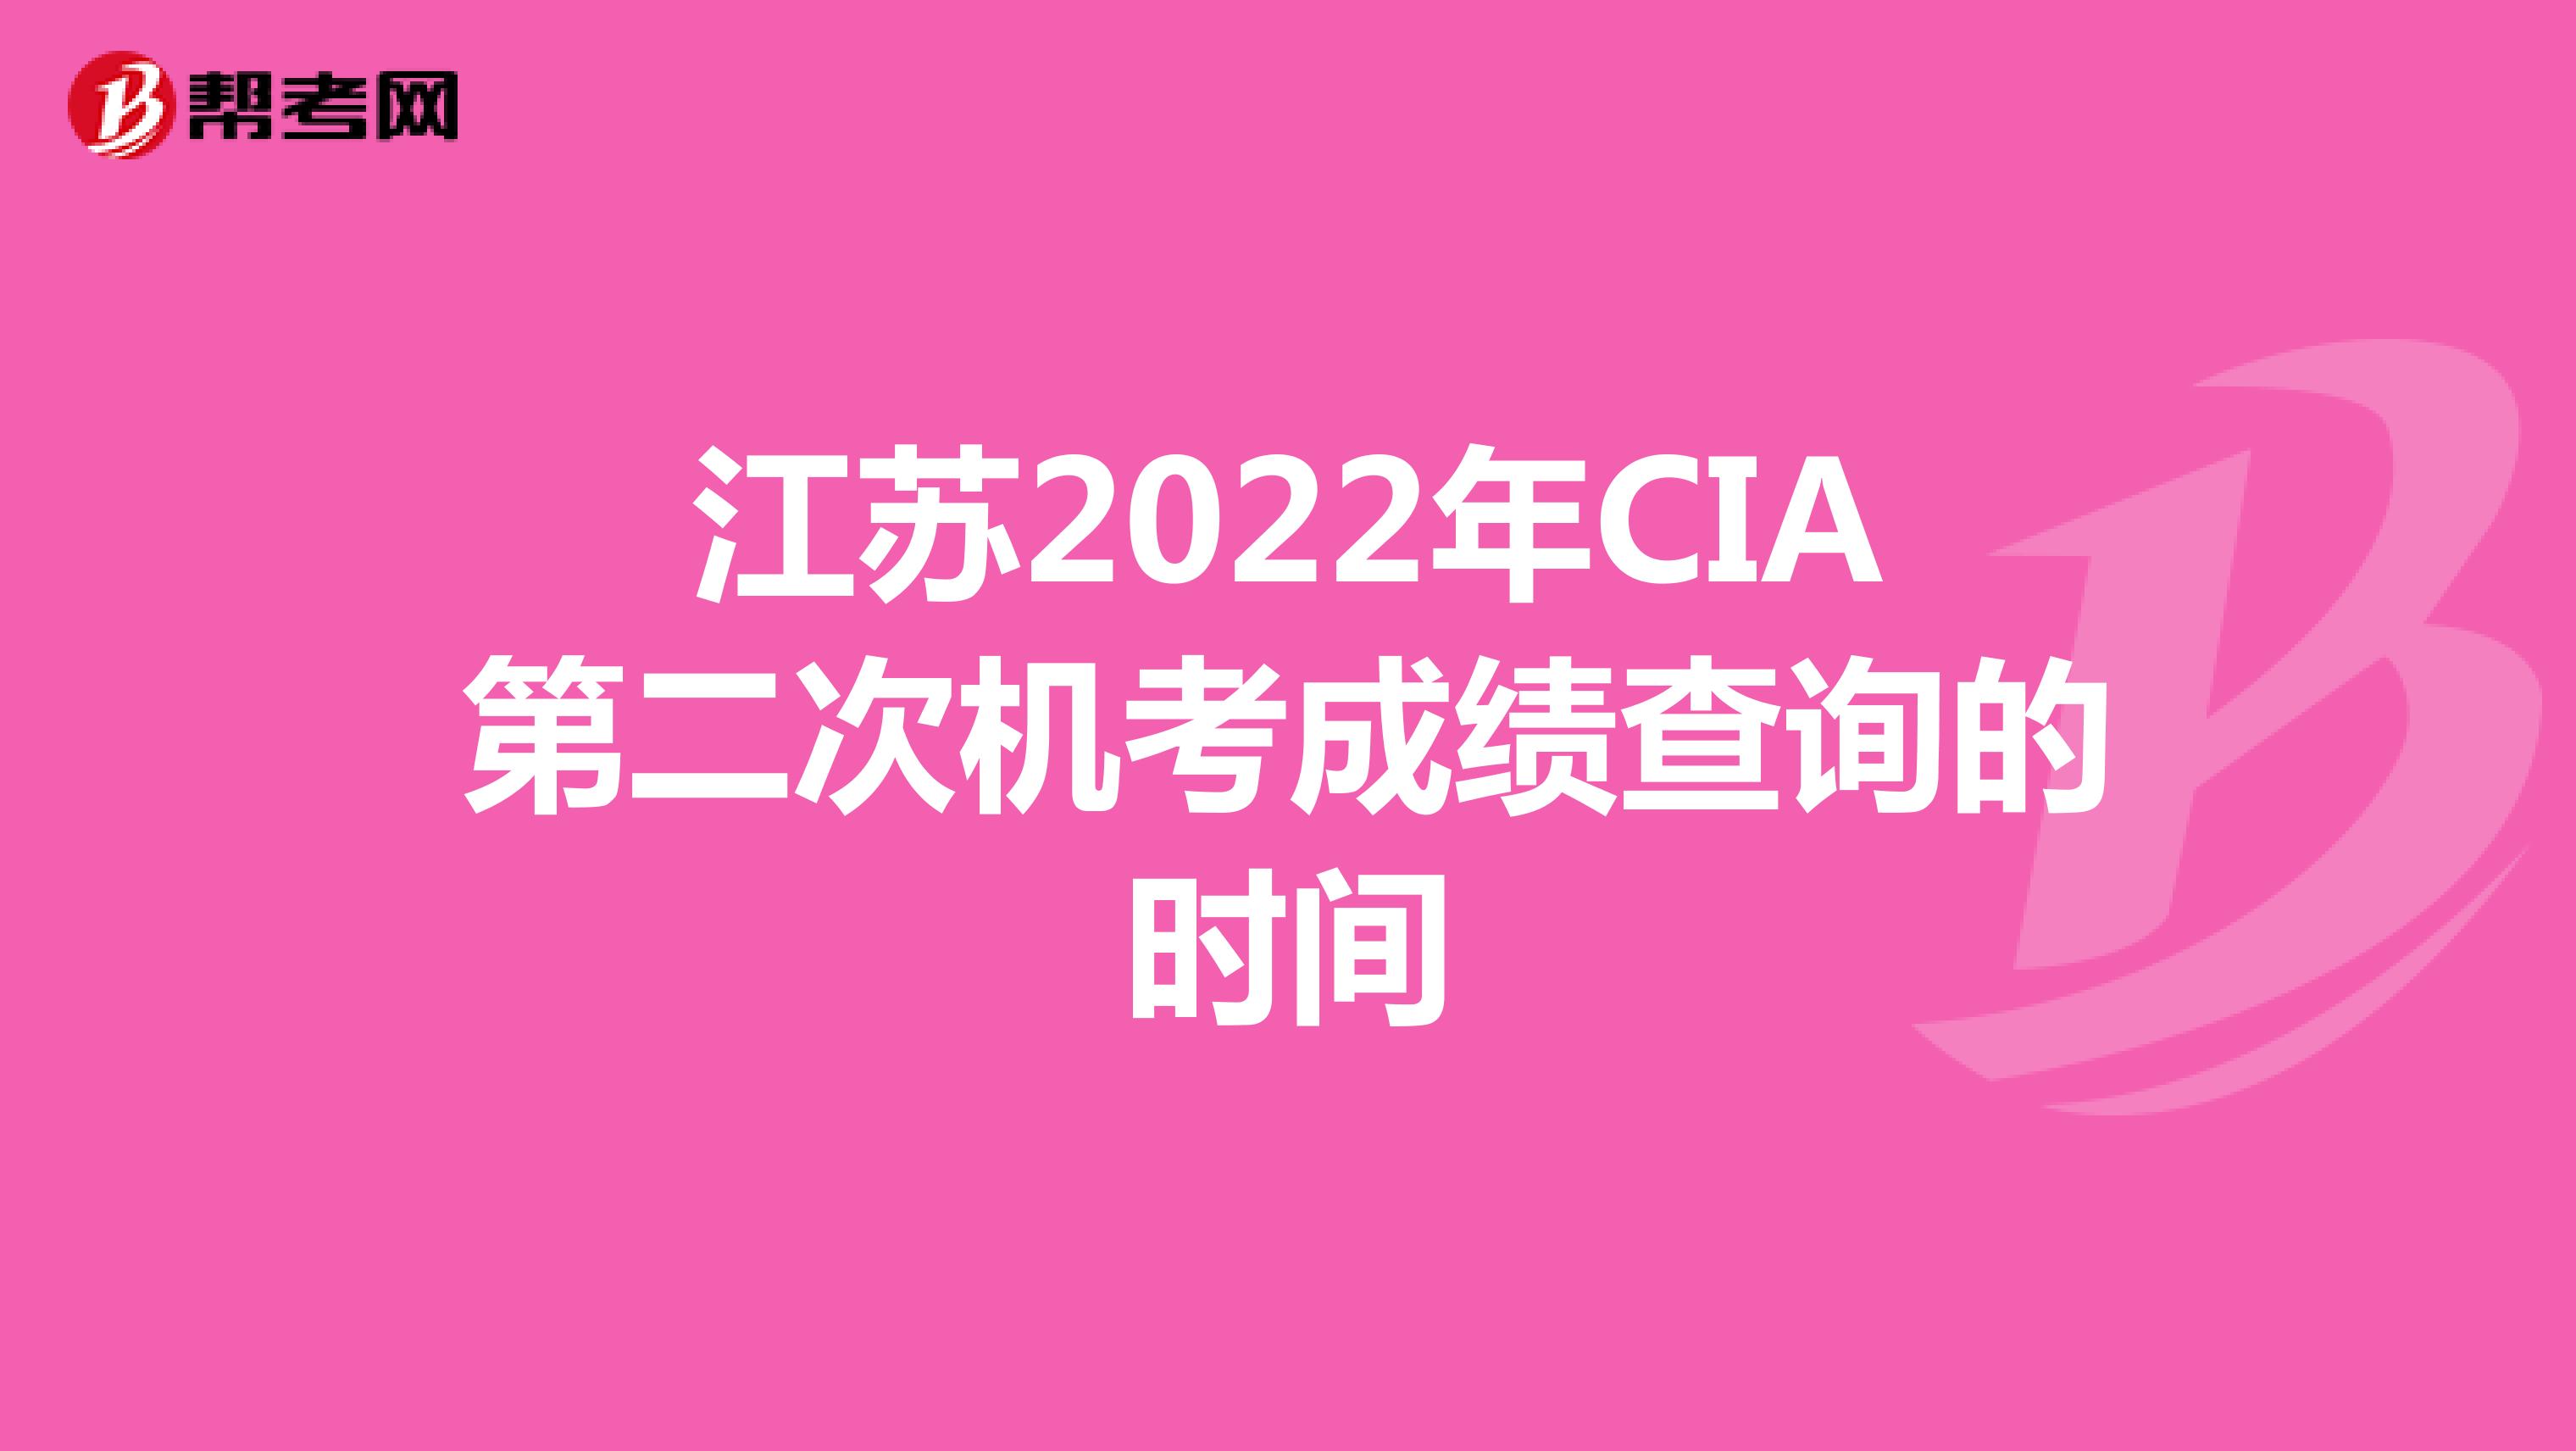 江苏2022年CIA第二次机考成绩查询的时间